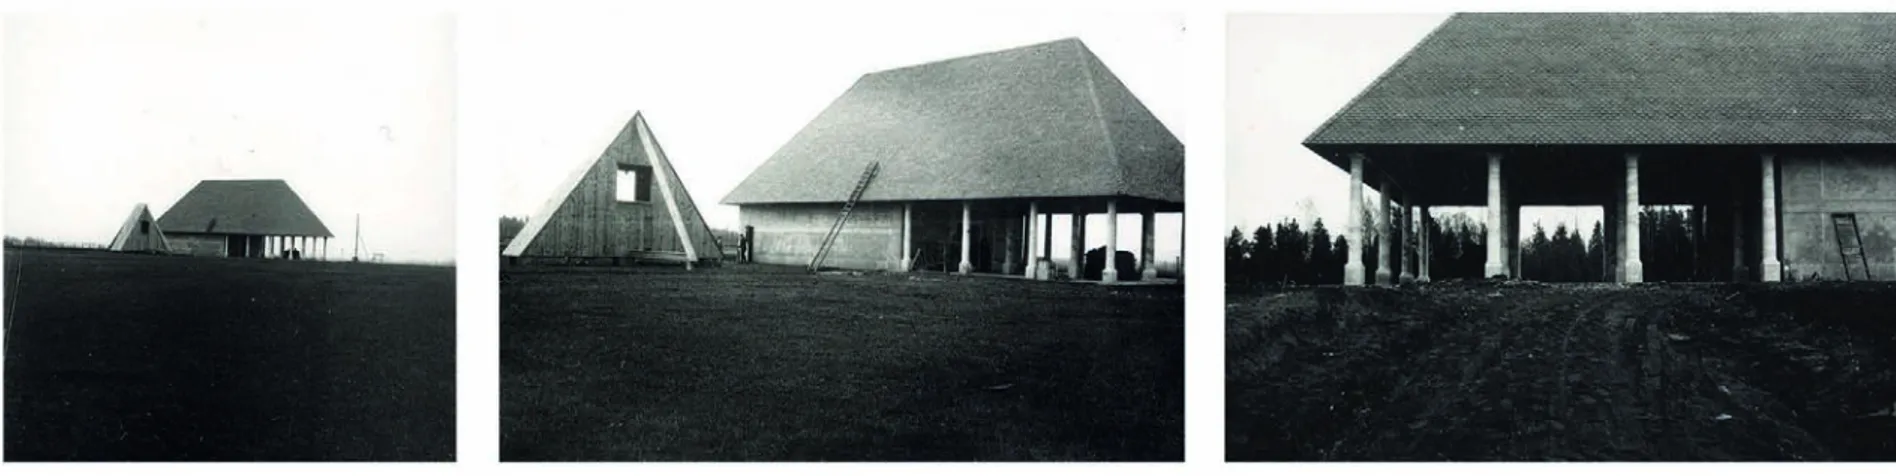 Fig. 11  Cimitero di Kvarnsveden, fotografie d’epoca della costruzione  della cappella e del campanile, circondati dalla campagna  pianeggiante